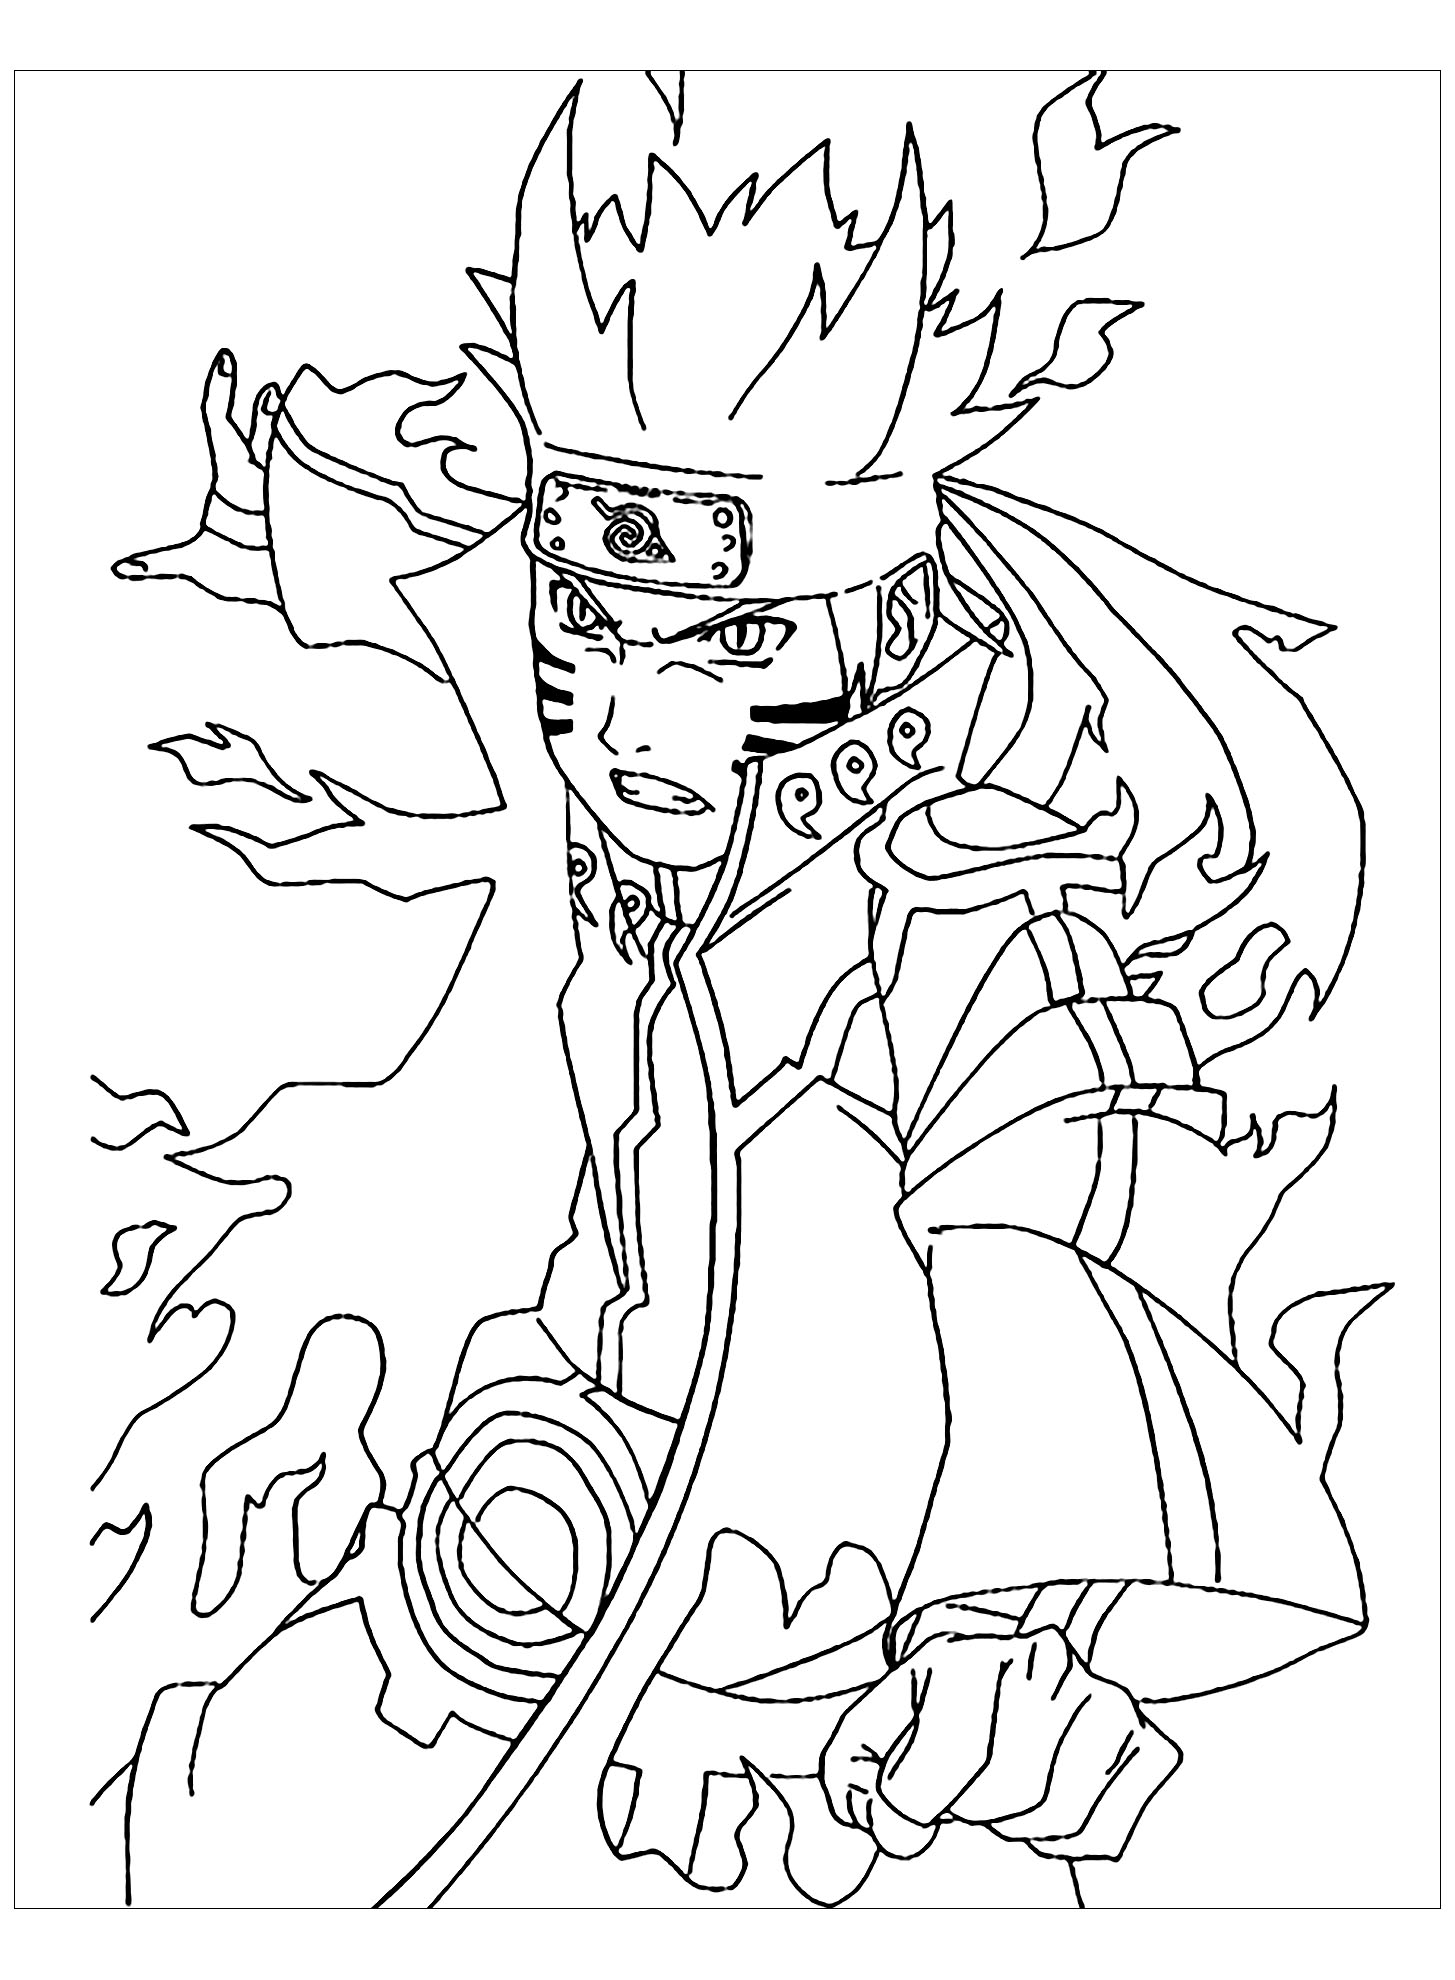 Desenhos de Naruto Shippuden Para Colorir - Páginas Para Impressão Grátis